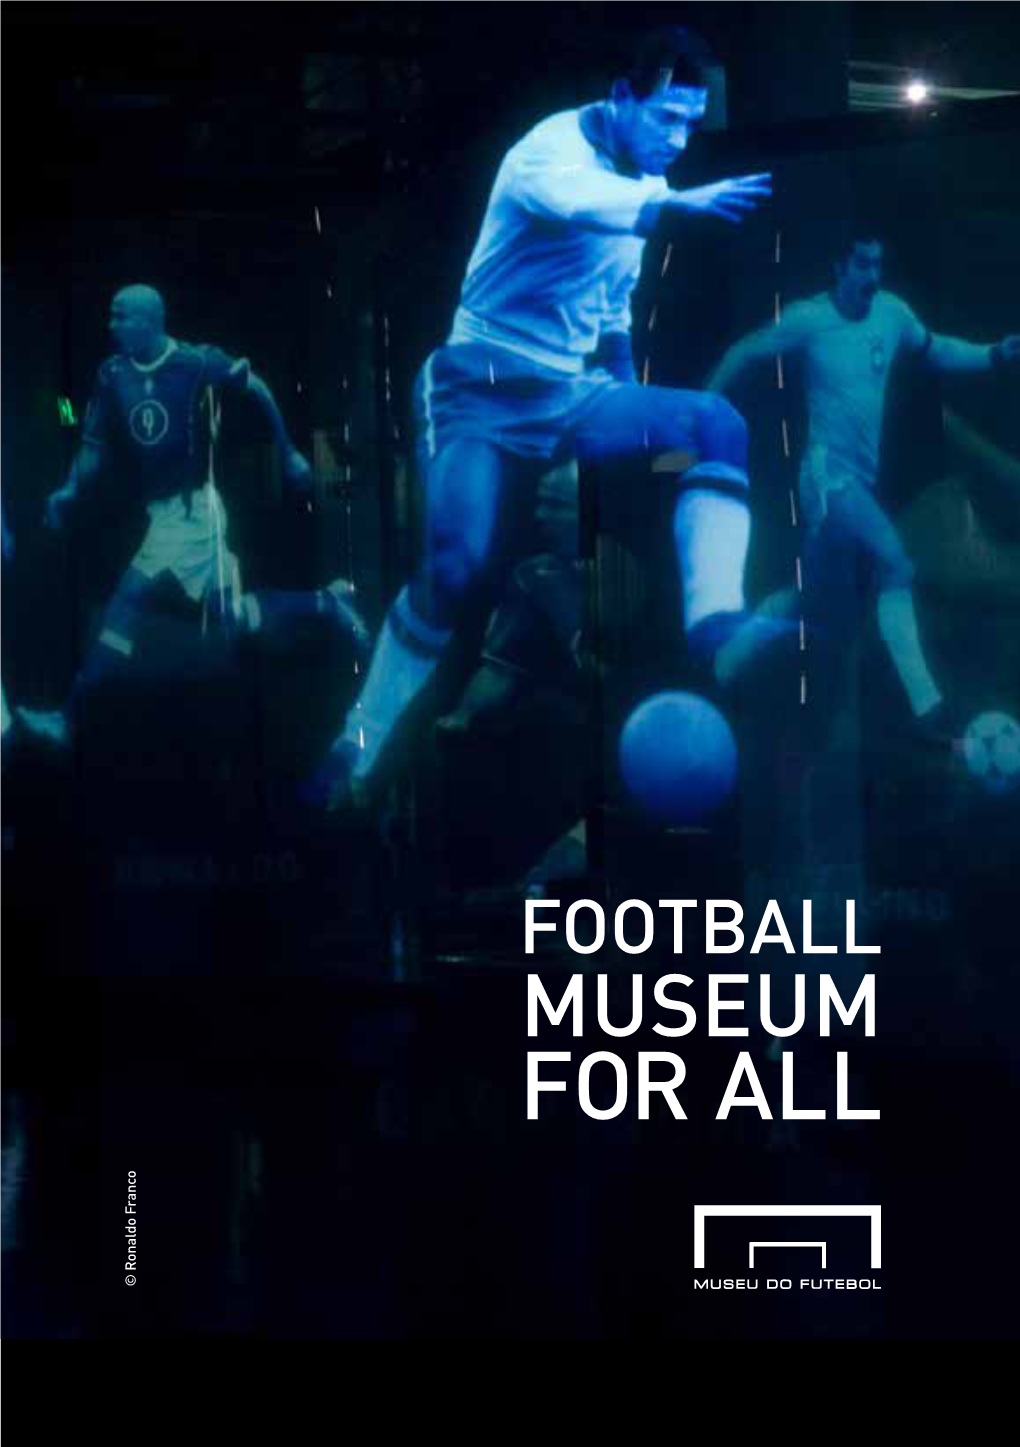 FOOTBALL MUSEUM for ALL © Ronaldo Franco